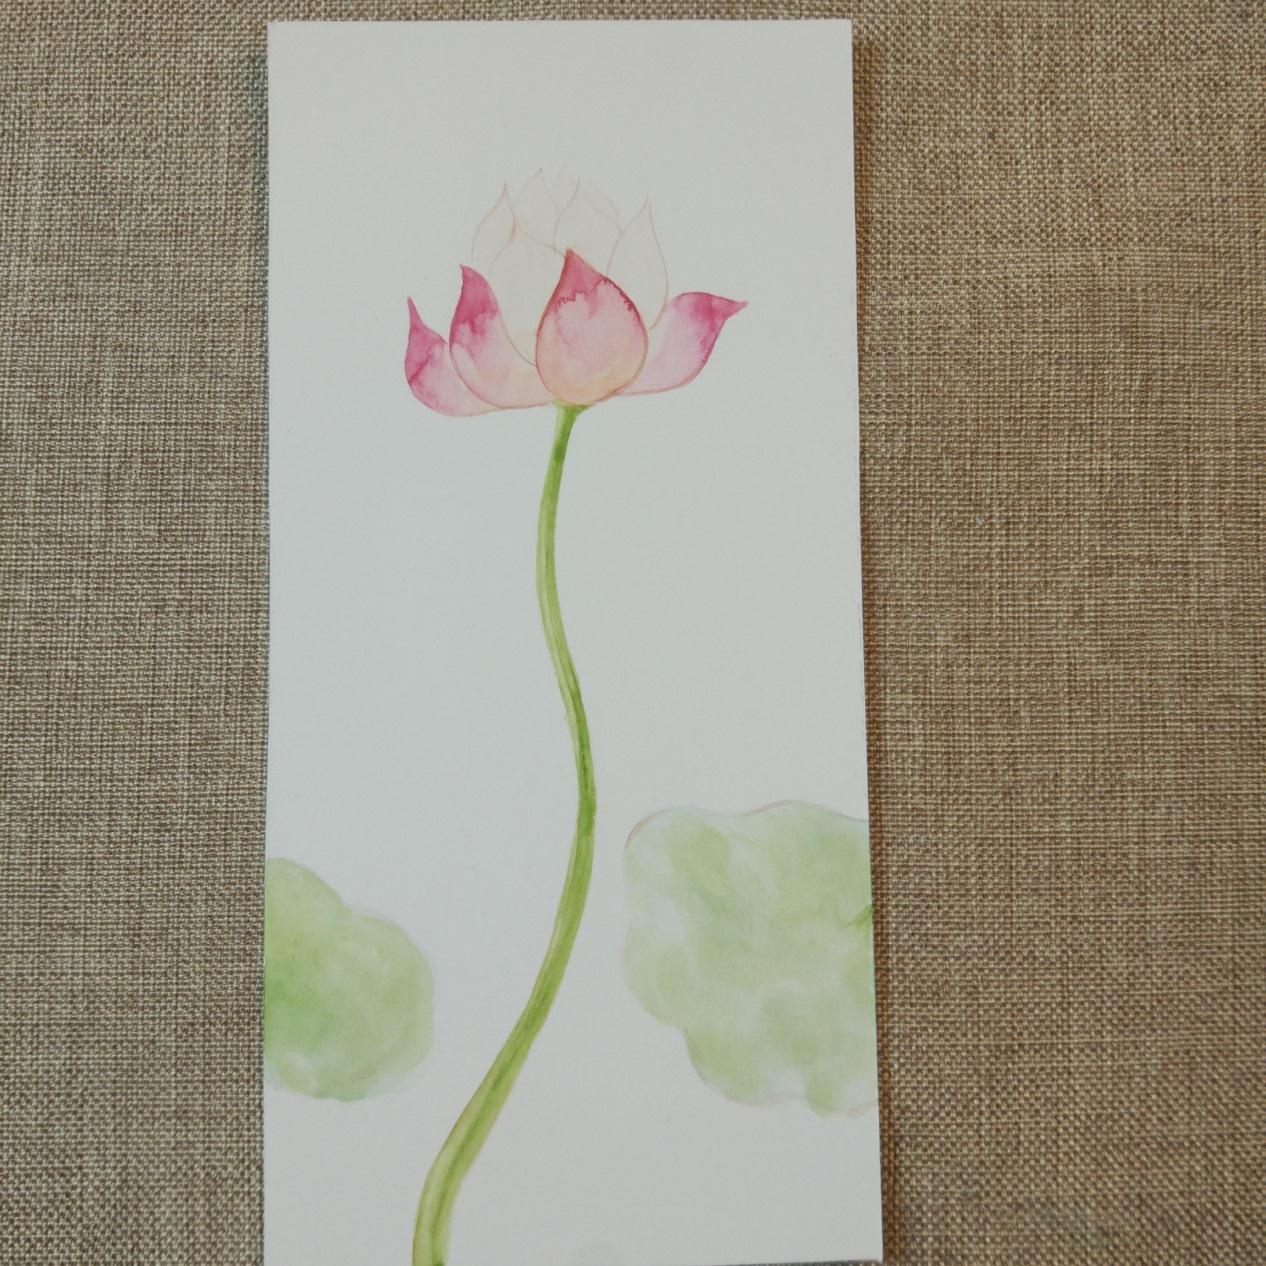 教你彩绘漂亮的花卉书签 荷花的画法详细步骤图解